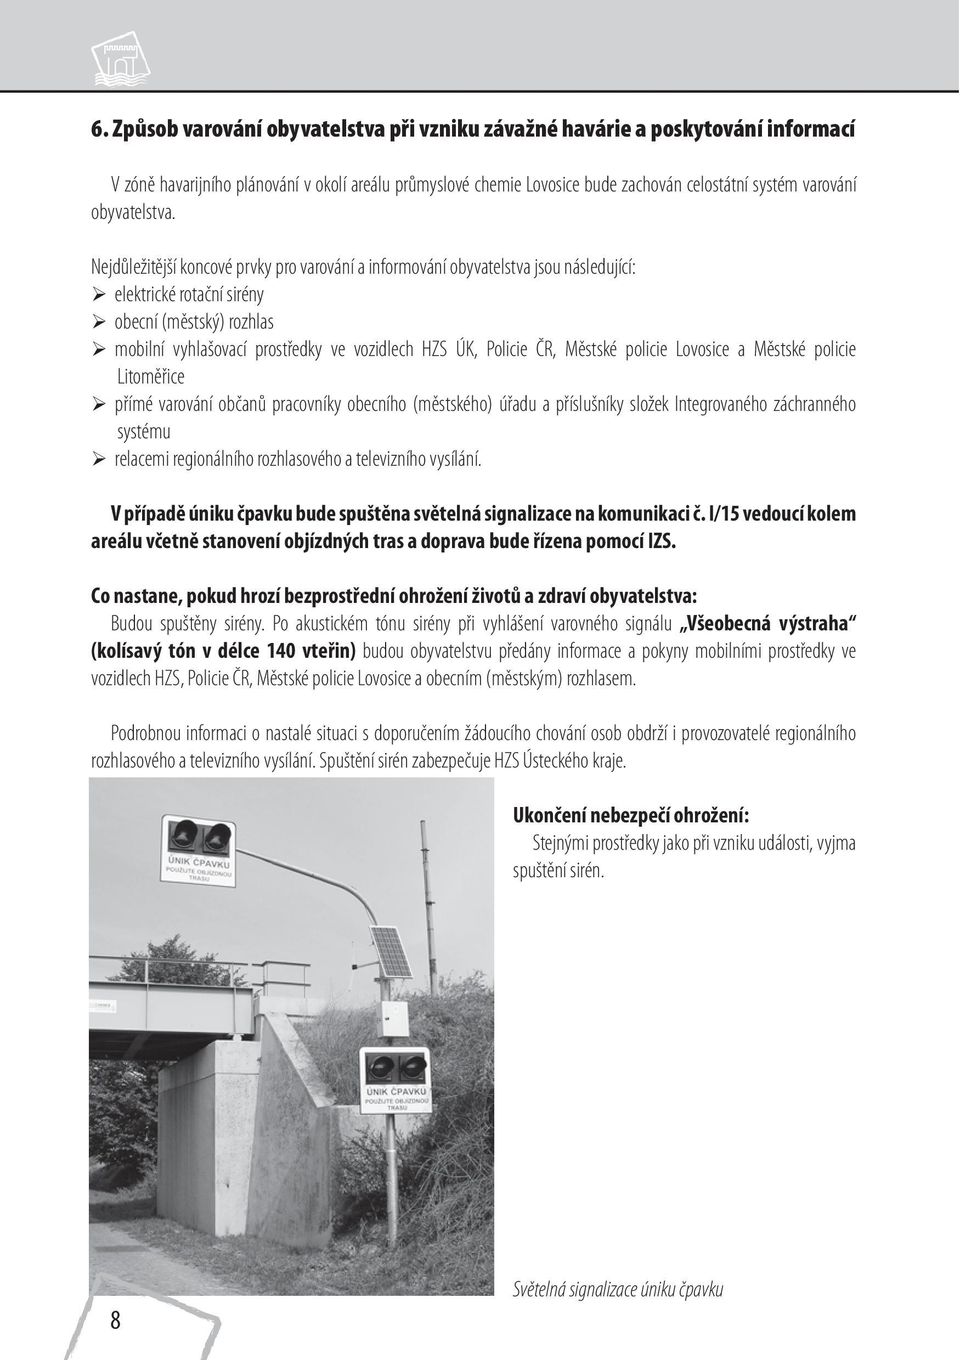 Nejdůležitější koncové prvky pro varování a informování obyvatelstva jsou následující: elektrické rotační sirény obecní (městský) rozhlas mobilní vyhlašovací prostředky ve vozidlech HZS ÚK, Policie